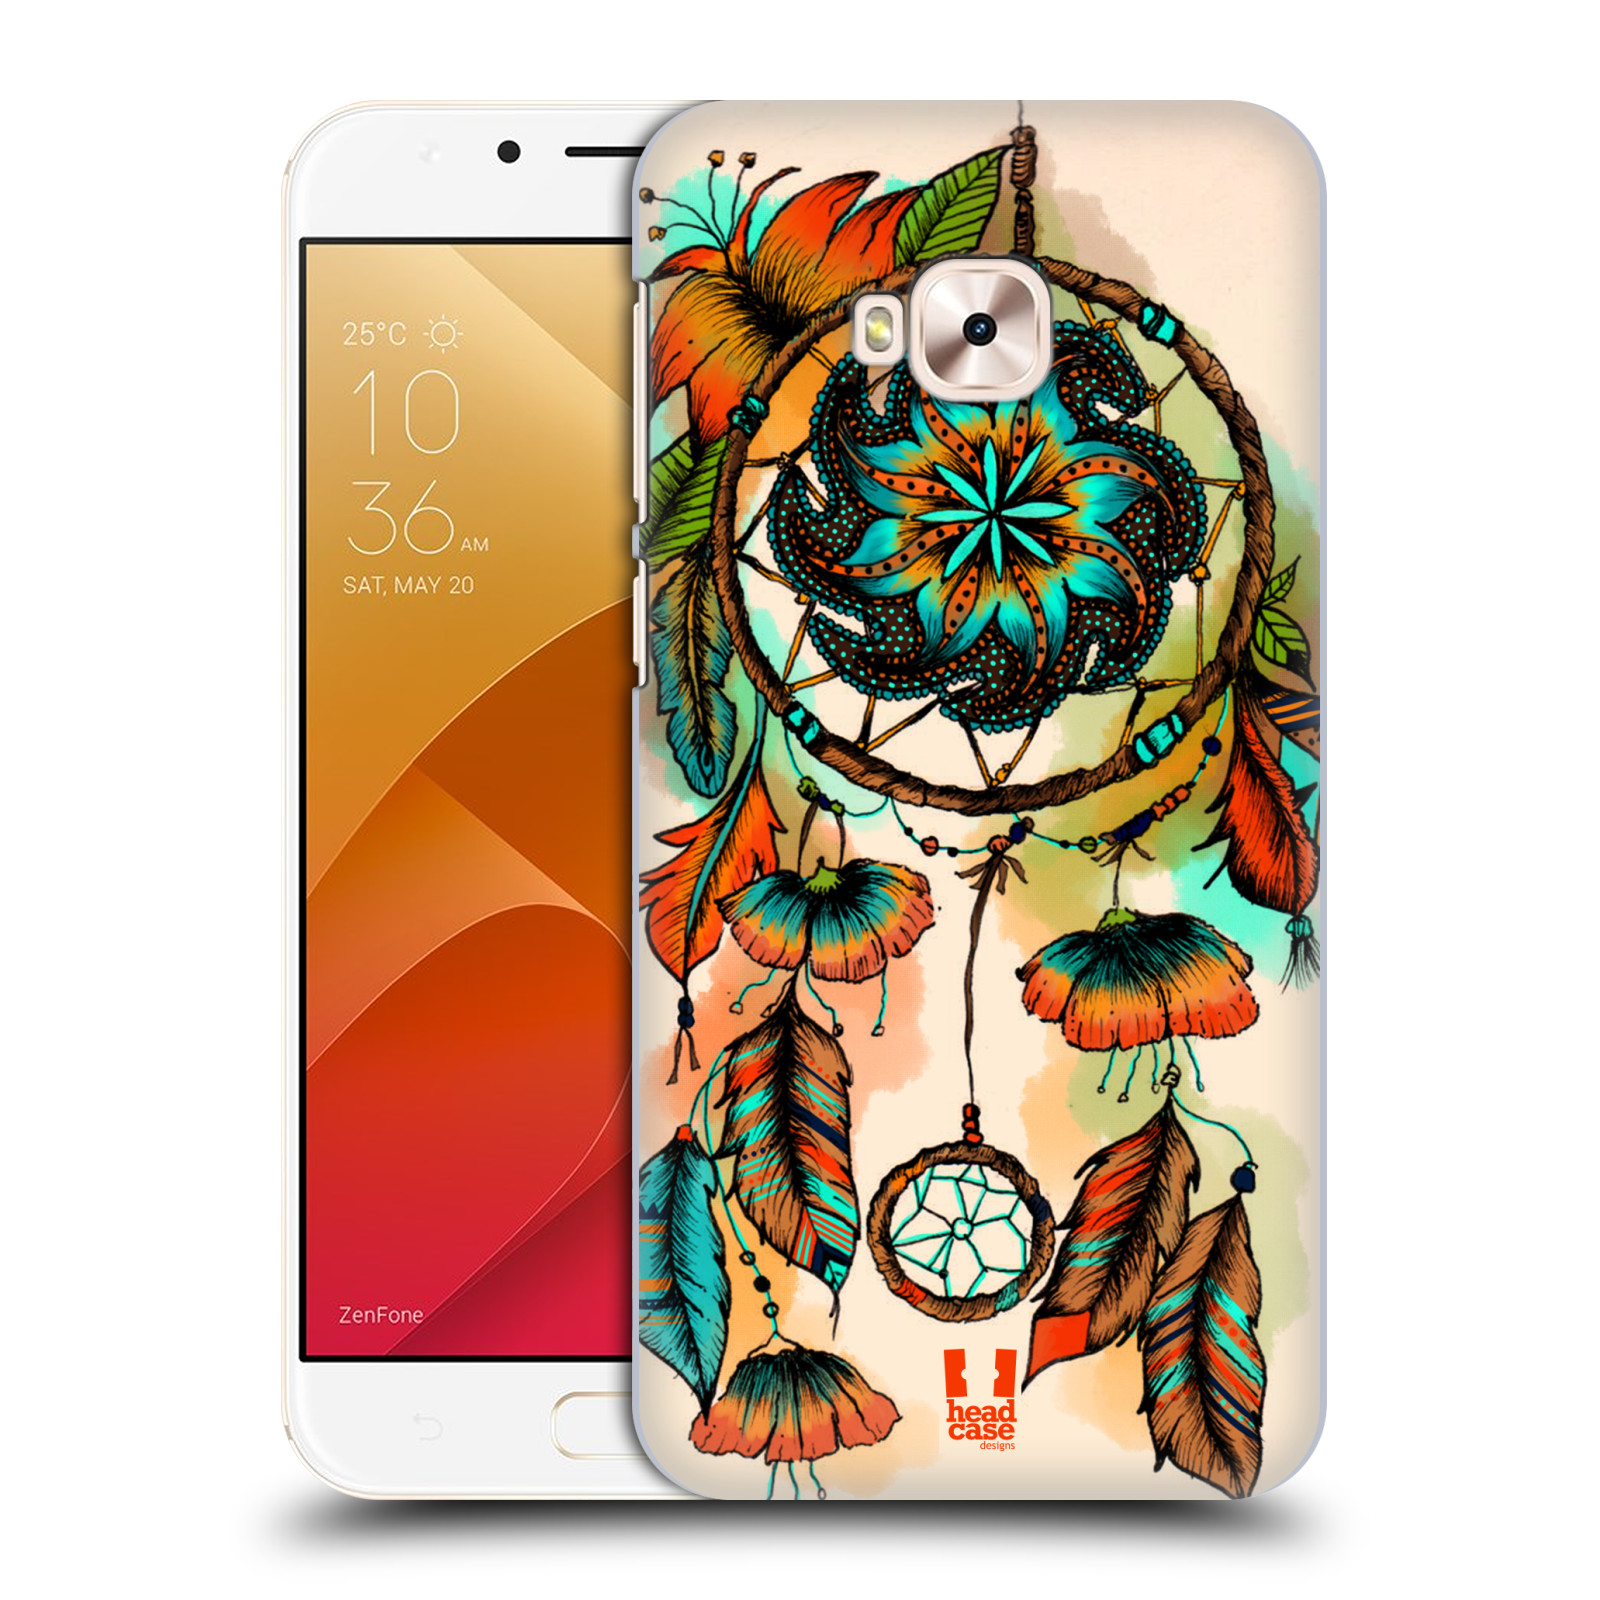 HEAD CASE plastový obal na mobil Asus Zenfone 4 Selfie Pro ZD552KL vzor Květy lapač snů merňka oranžová